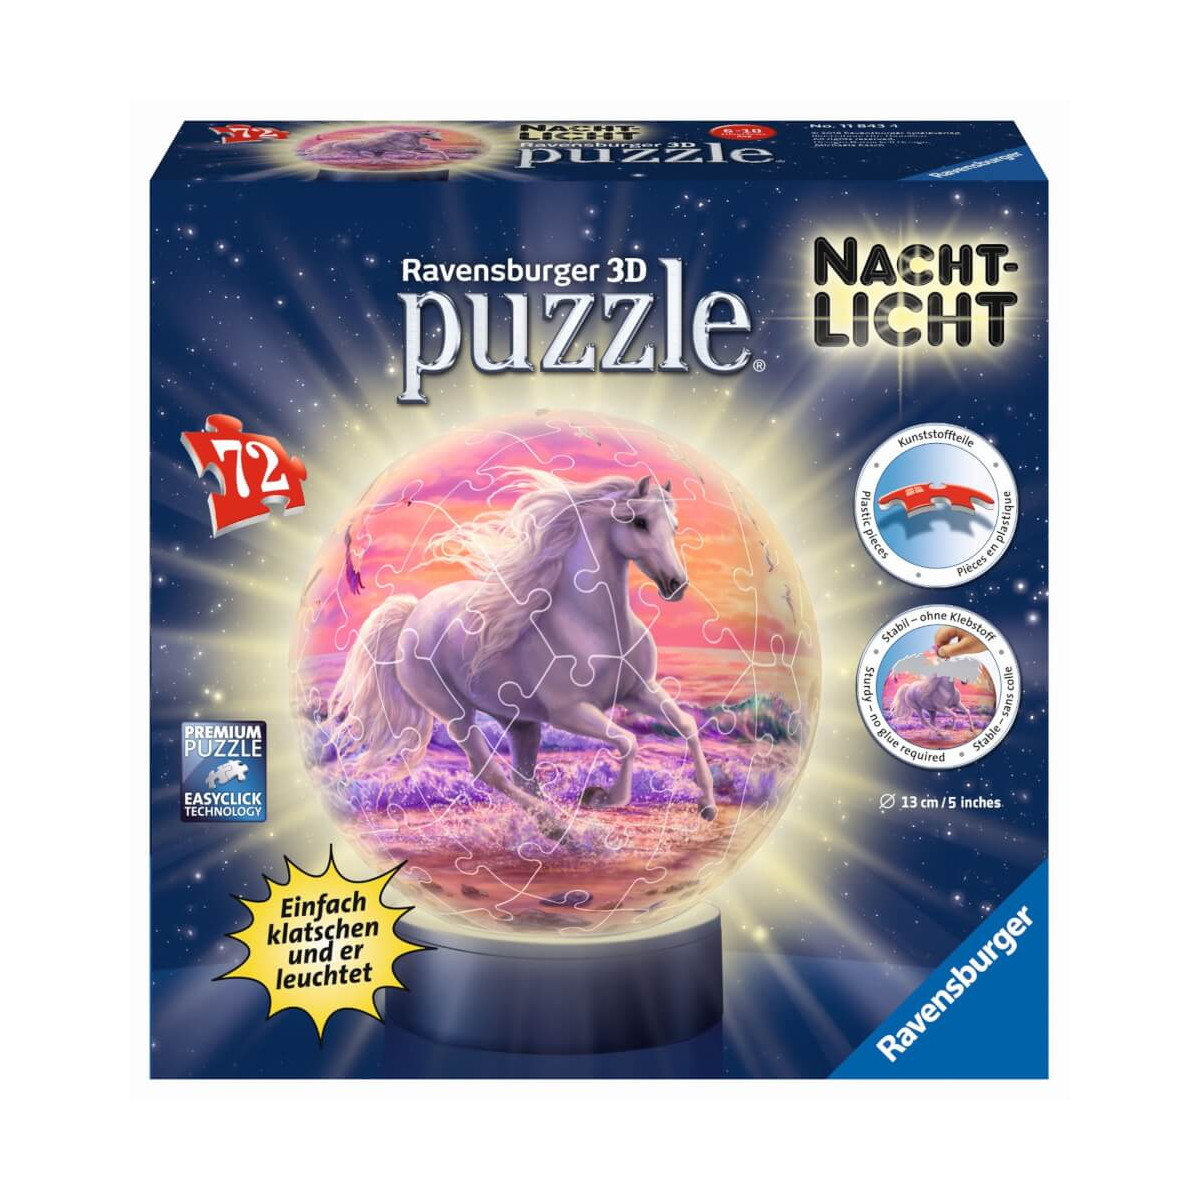 Ravensburger 3D Puzzle 11843   Nachtlicht Puzzle Ball Pferde am Strand   72 Teile   ab 6 Jahren, LED